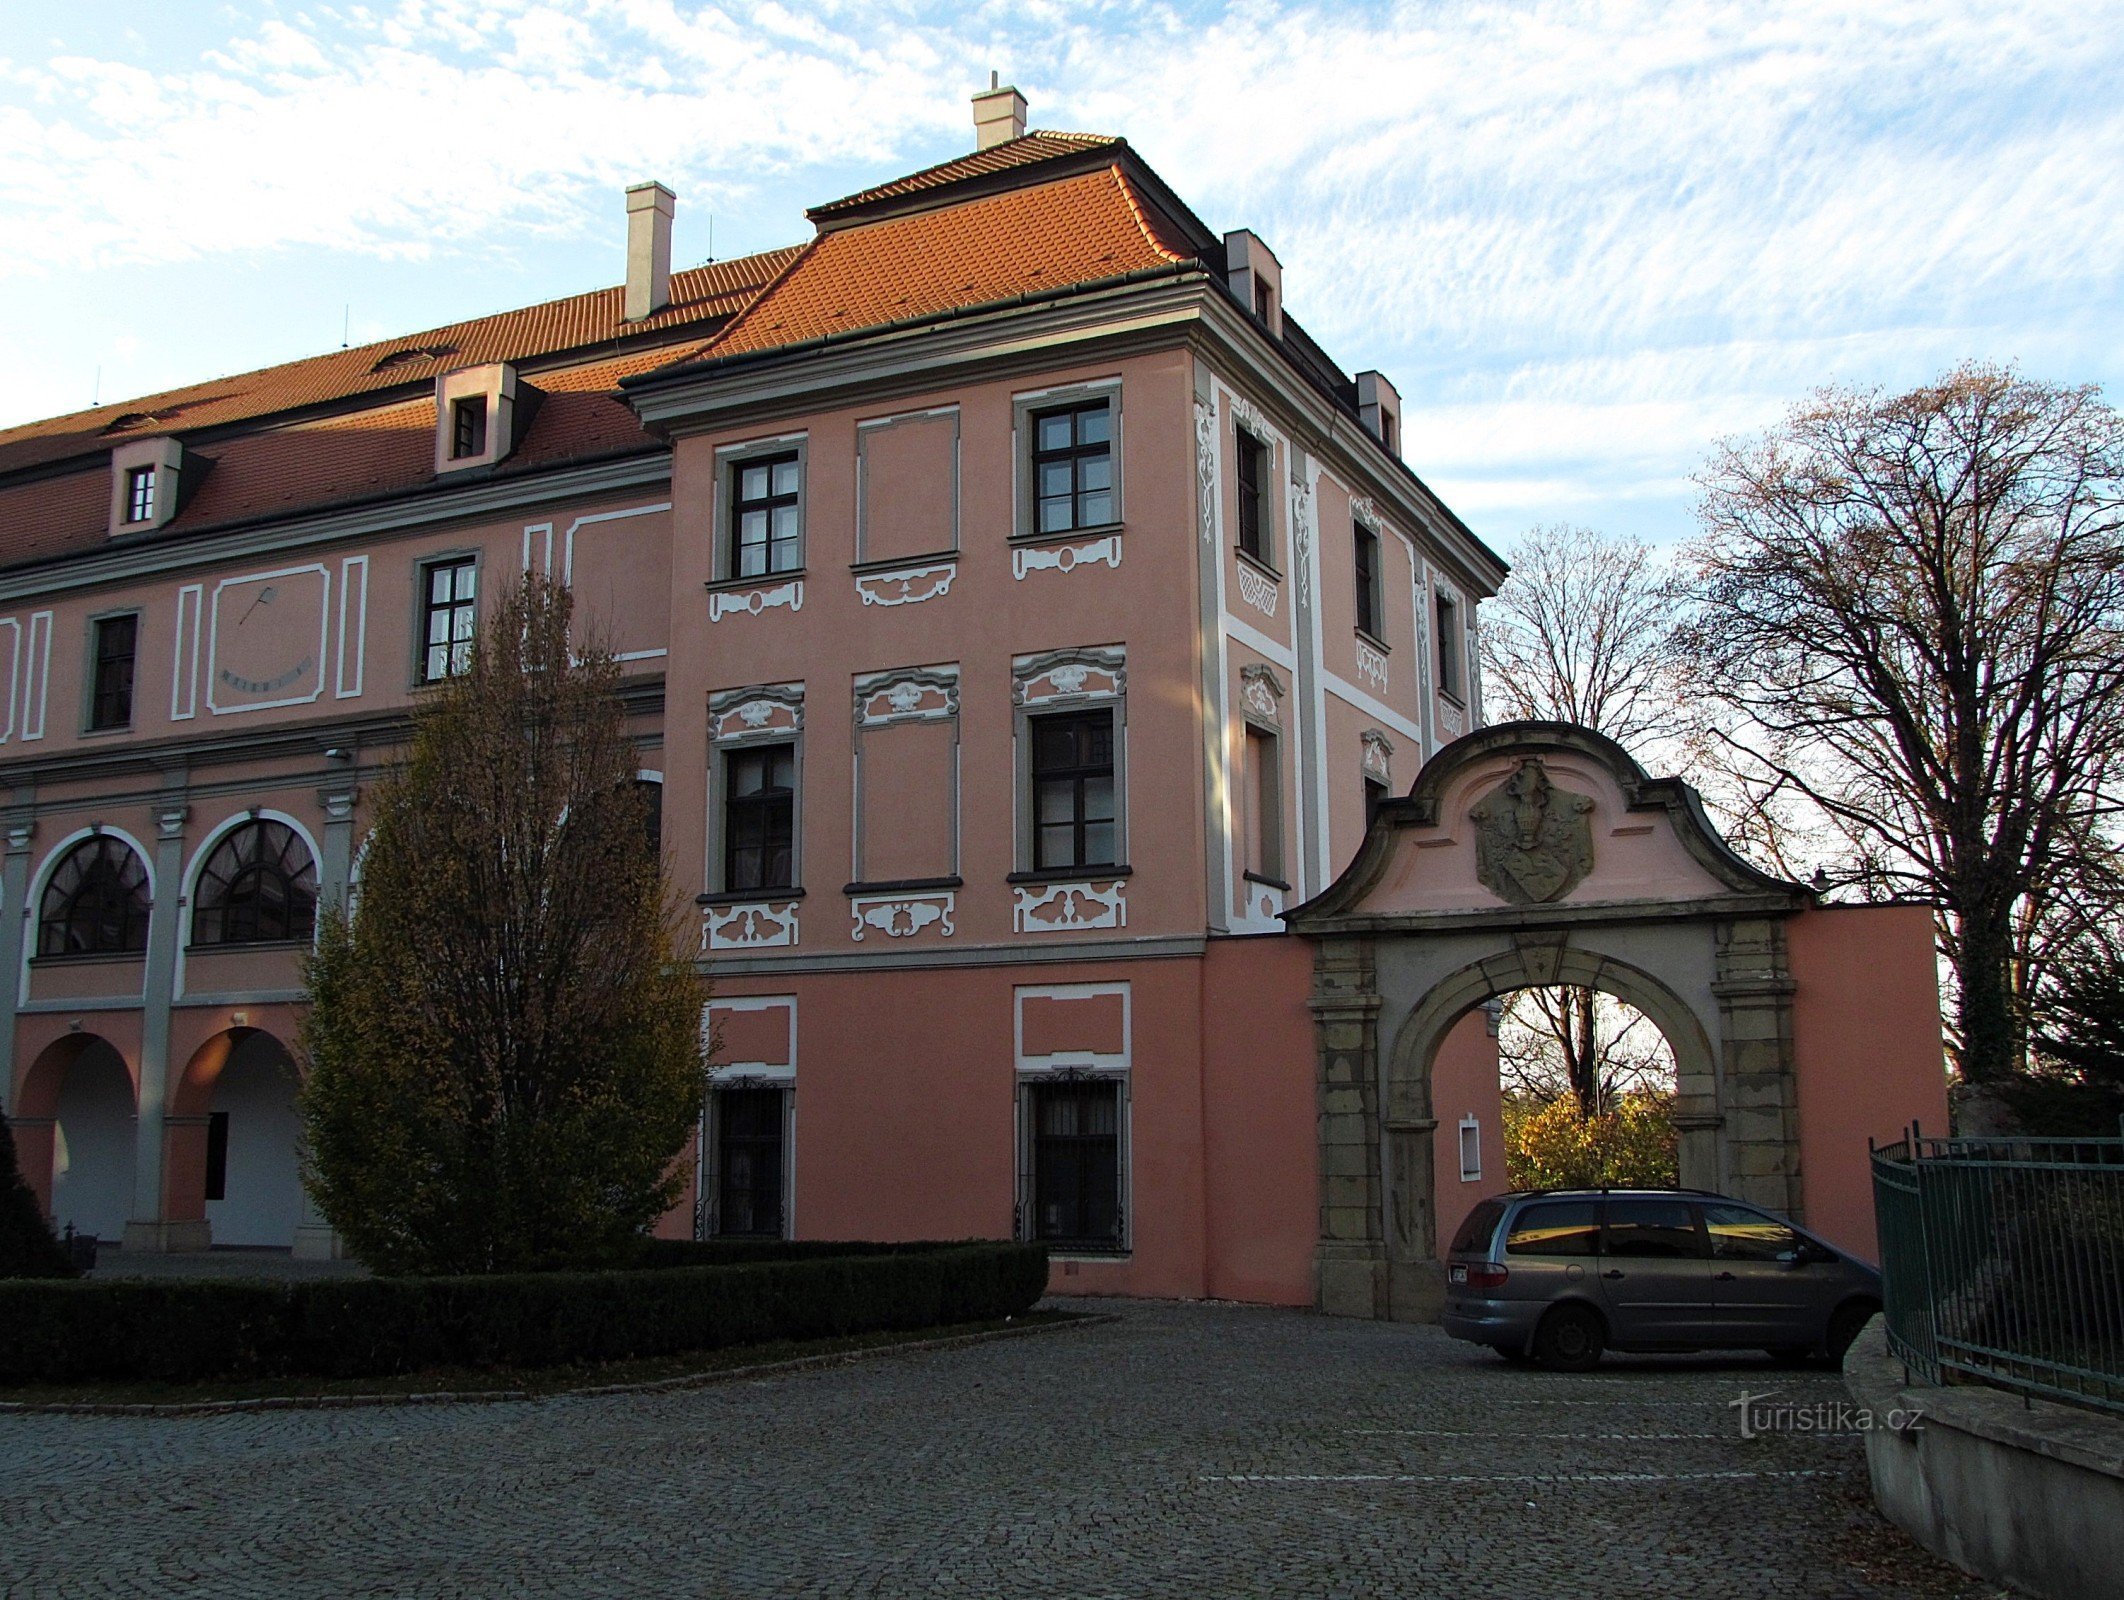 Valašské Meziříčí - lâu đài Žerotín ở trung tâm thành phố